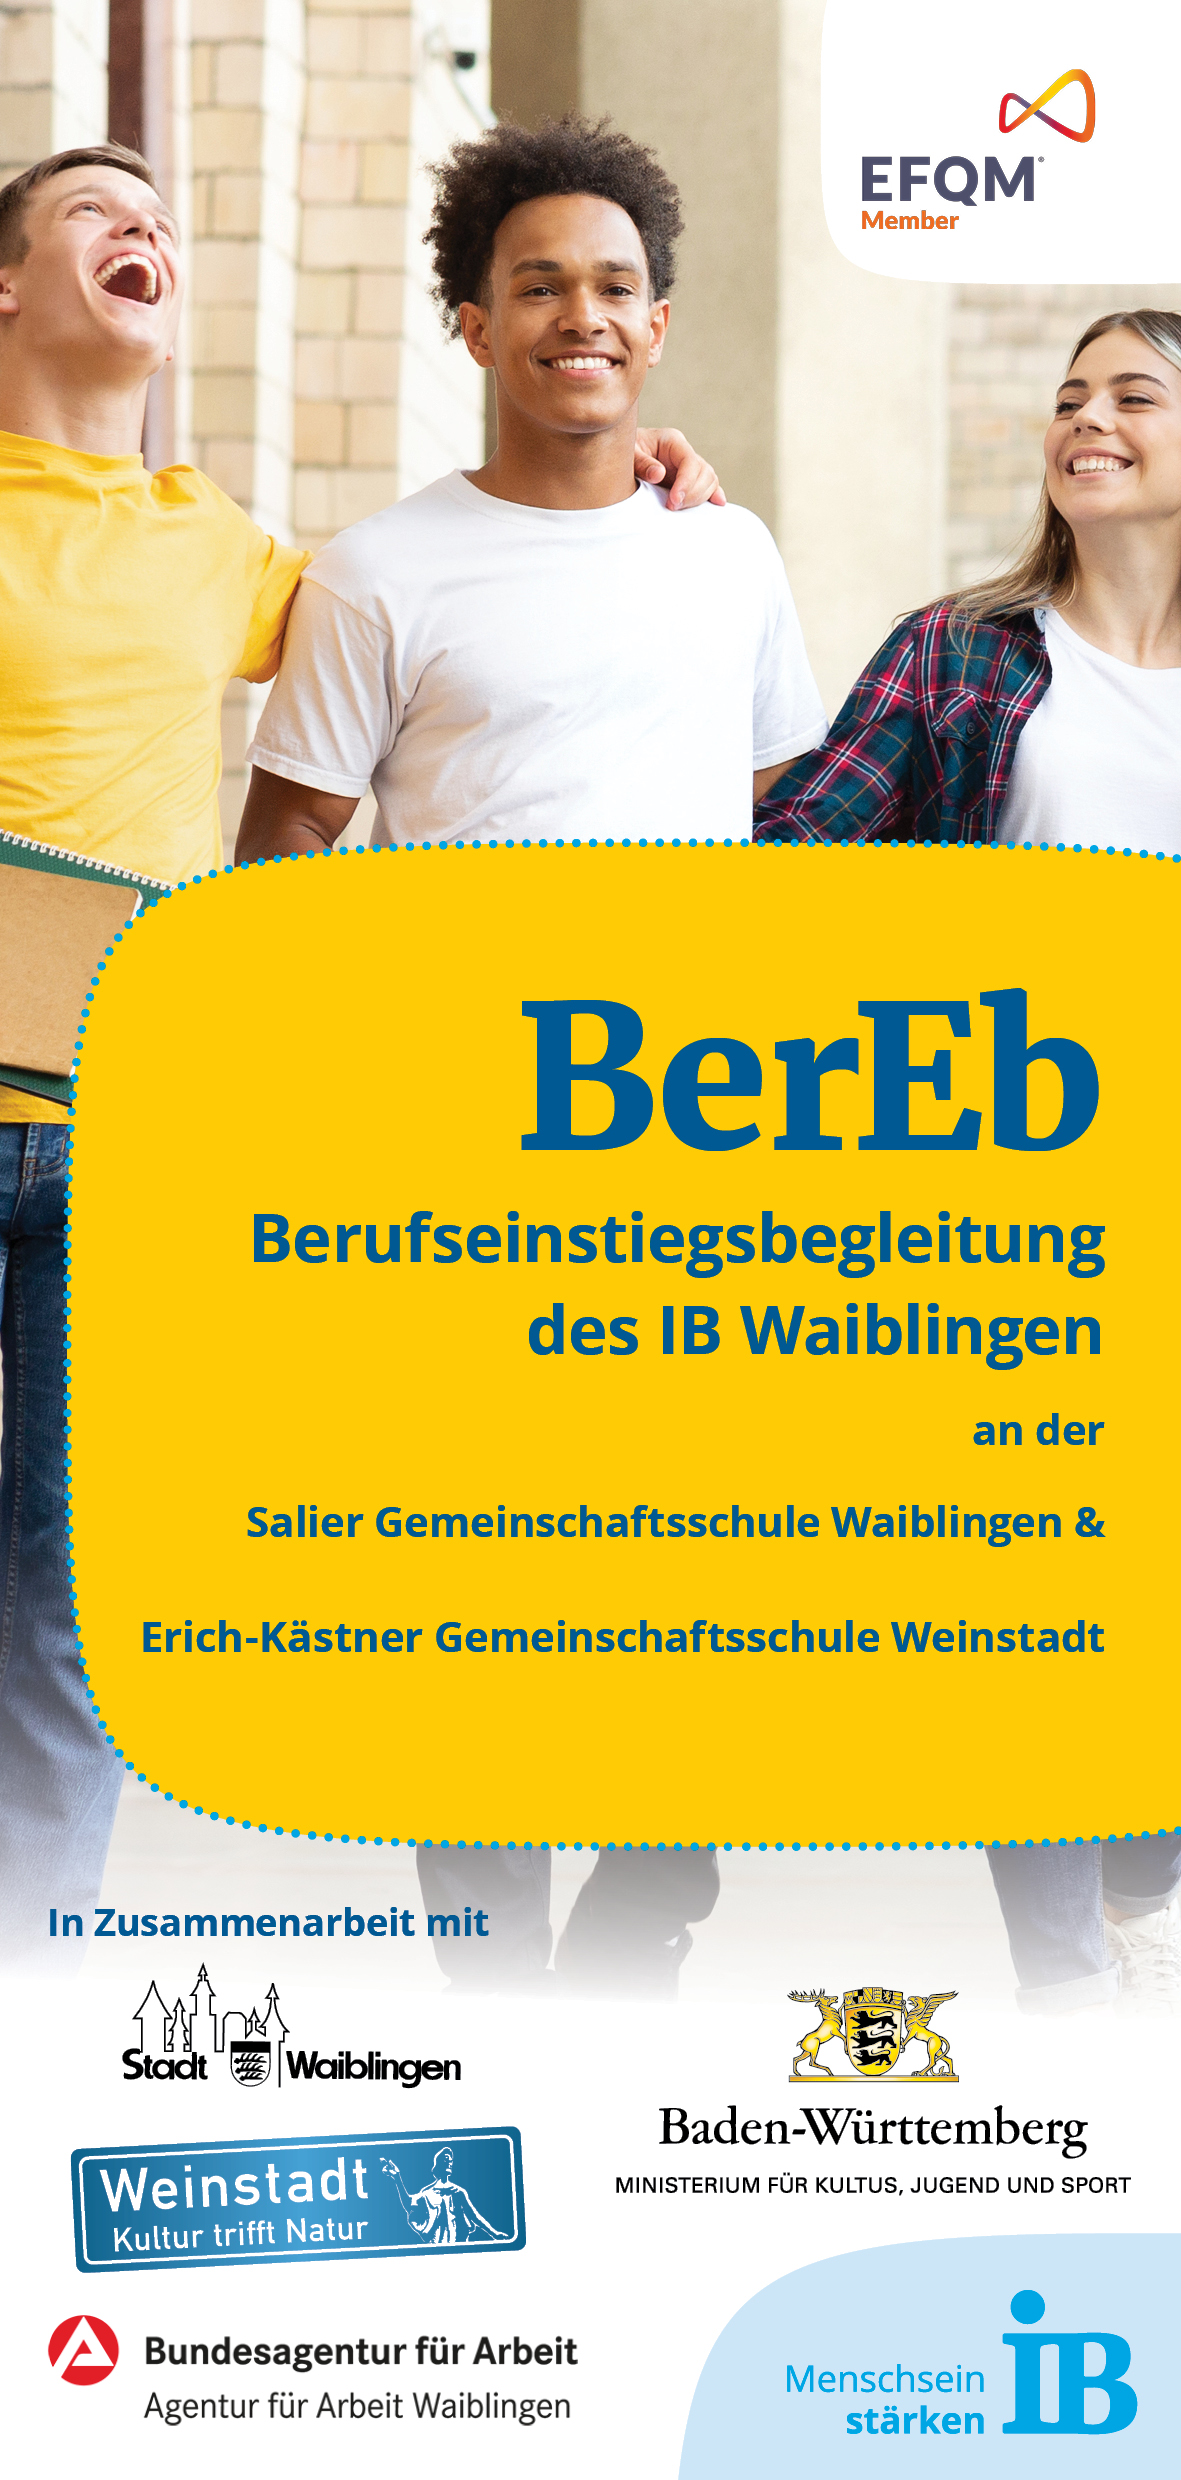 upload/BIldungszentrum Waiblingen/AMDL/Waiblingen/Bereb/2020_11_11_BerEb3.jpg